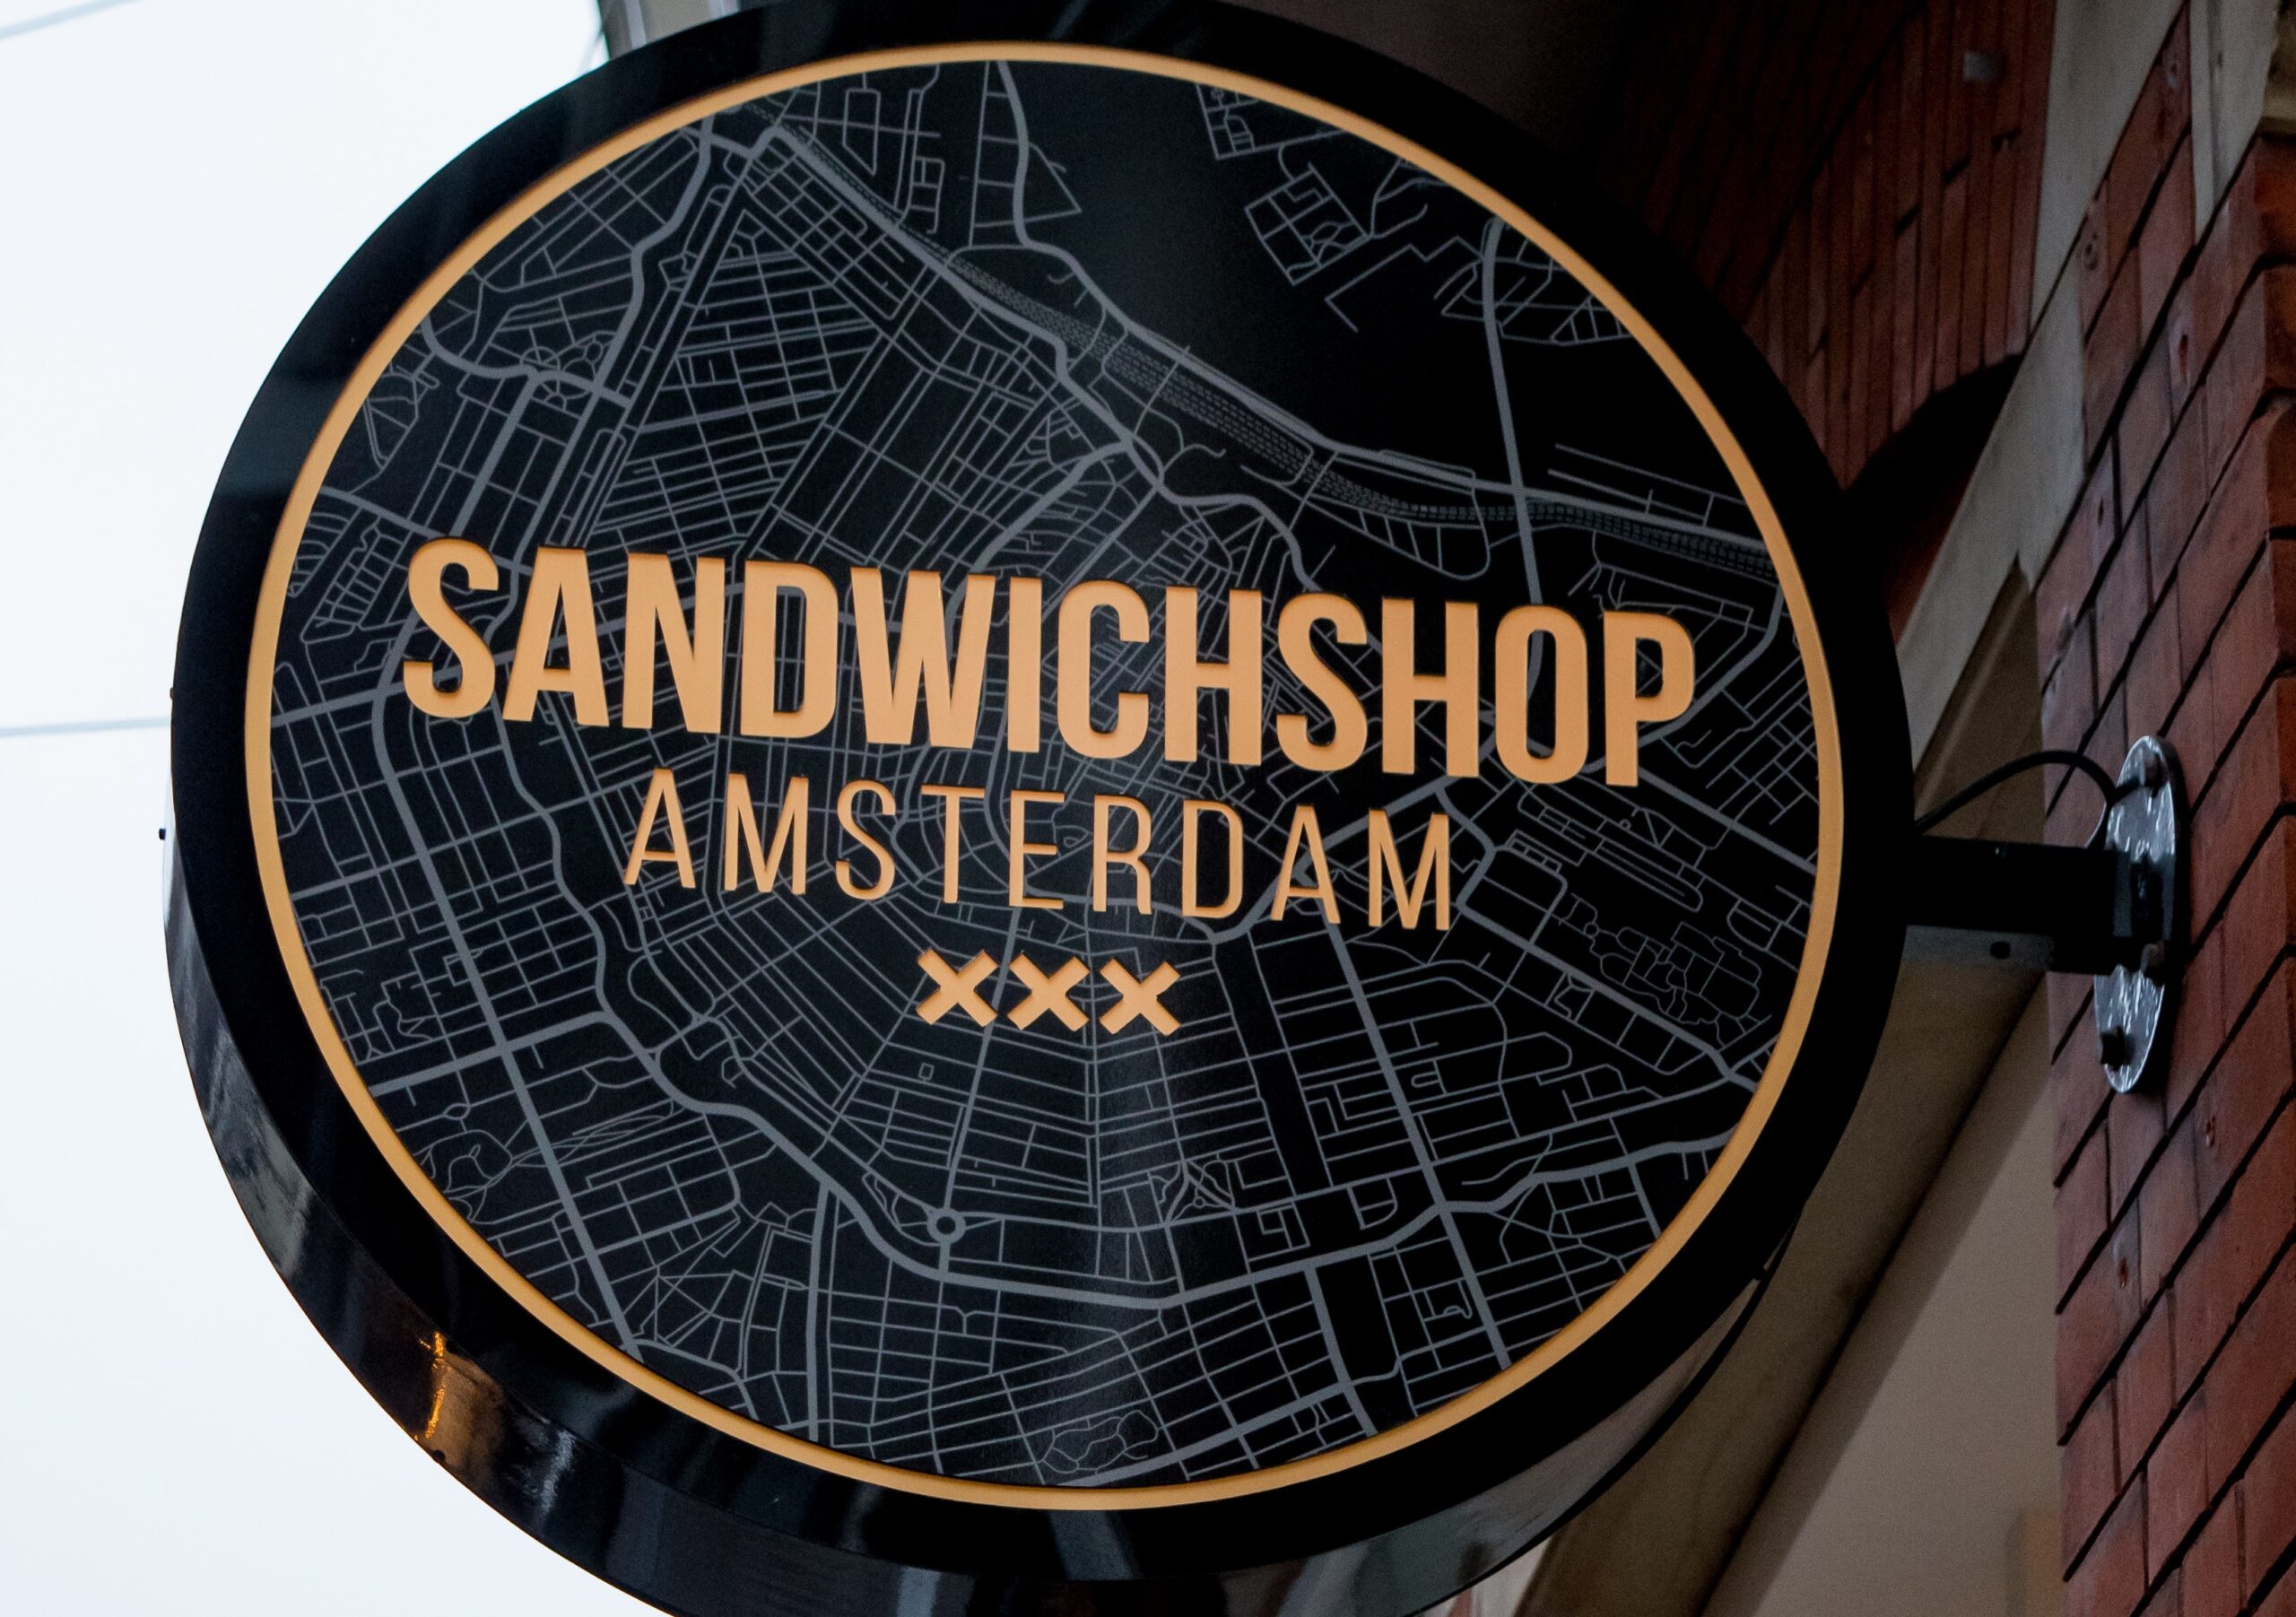 Afbeelding van het logo van de Sandwichshop op een bord aan de buitenzijde van de zaak in hartje Amsterdam!